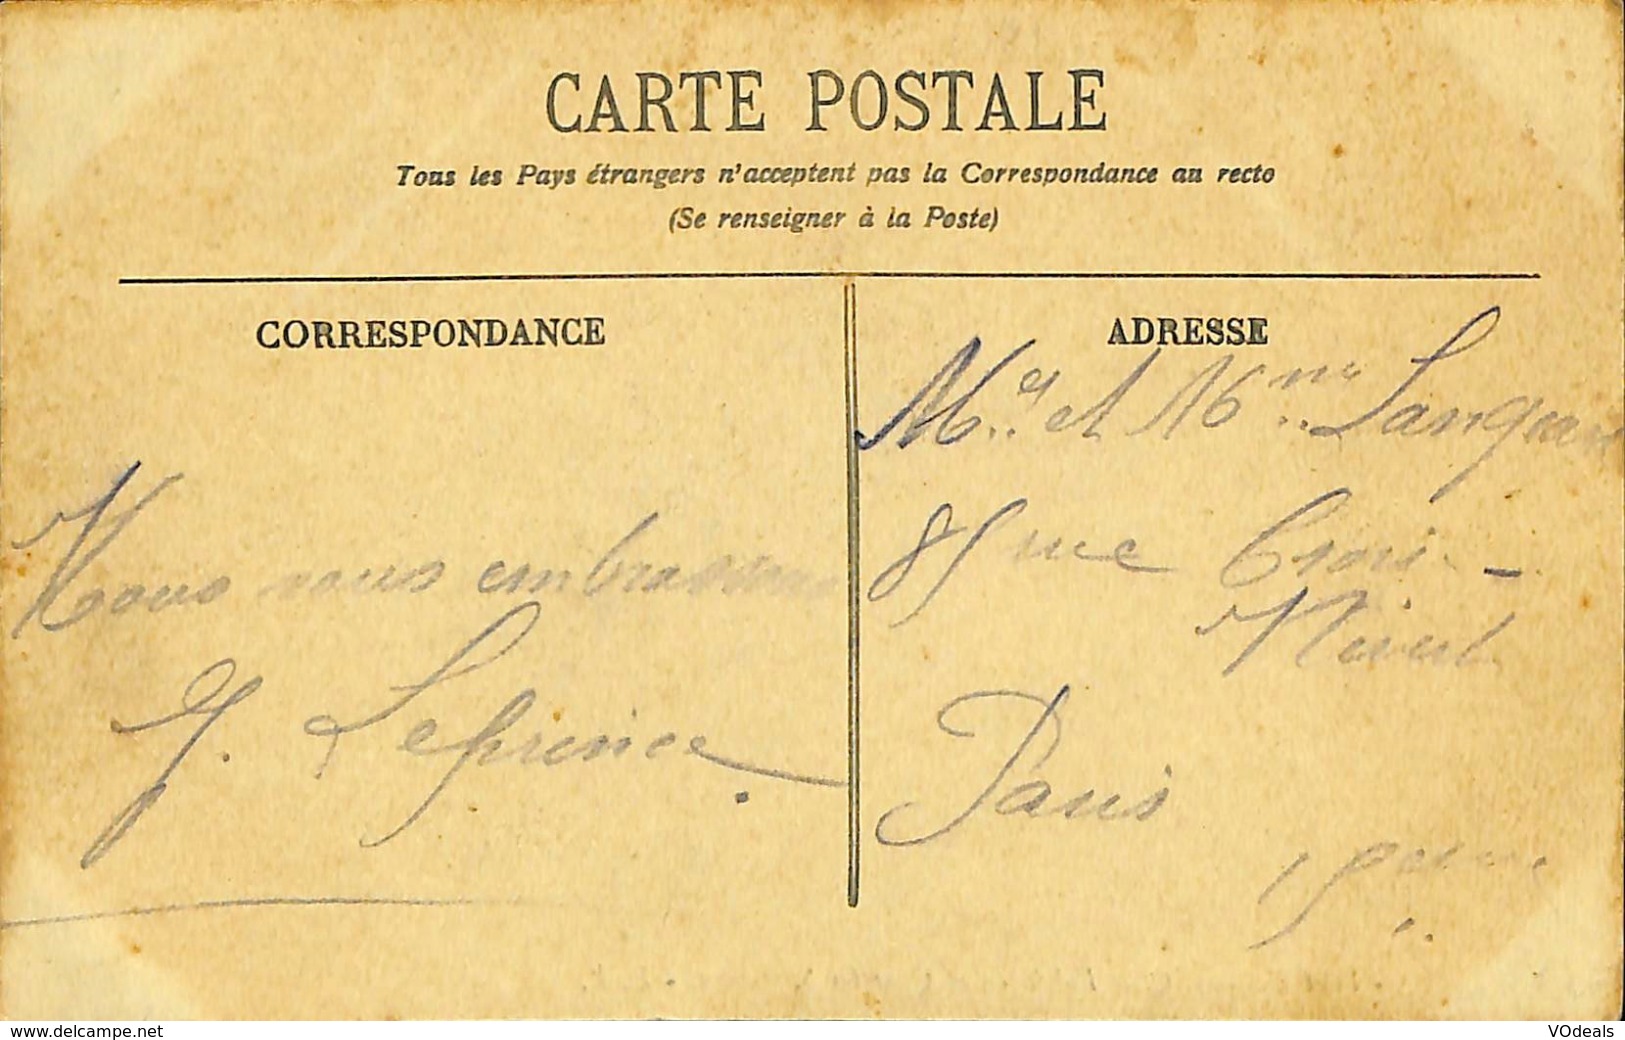 CPA - France - Lot de 10 cartes postales - Lot 43